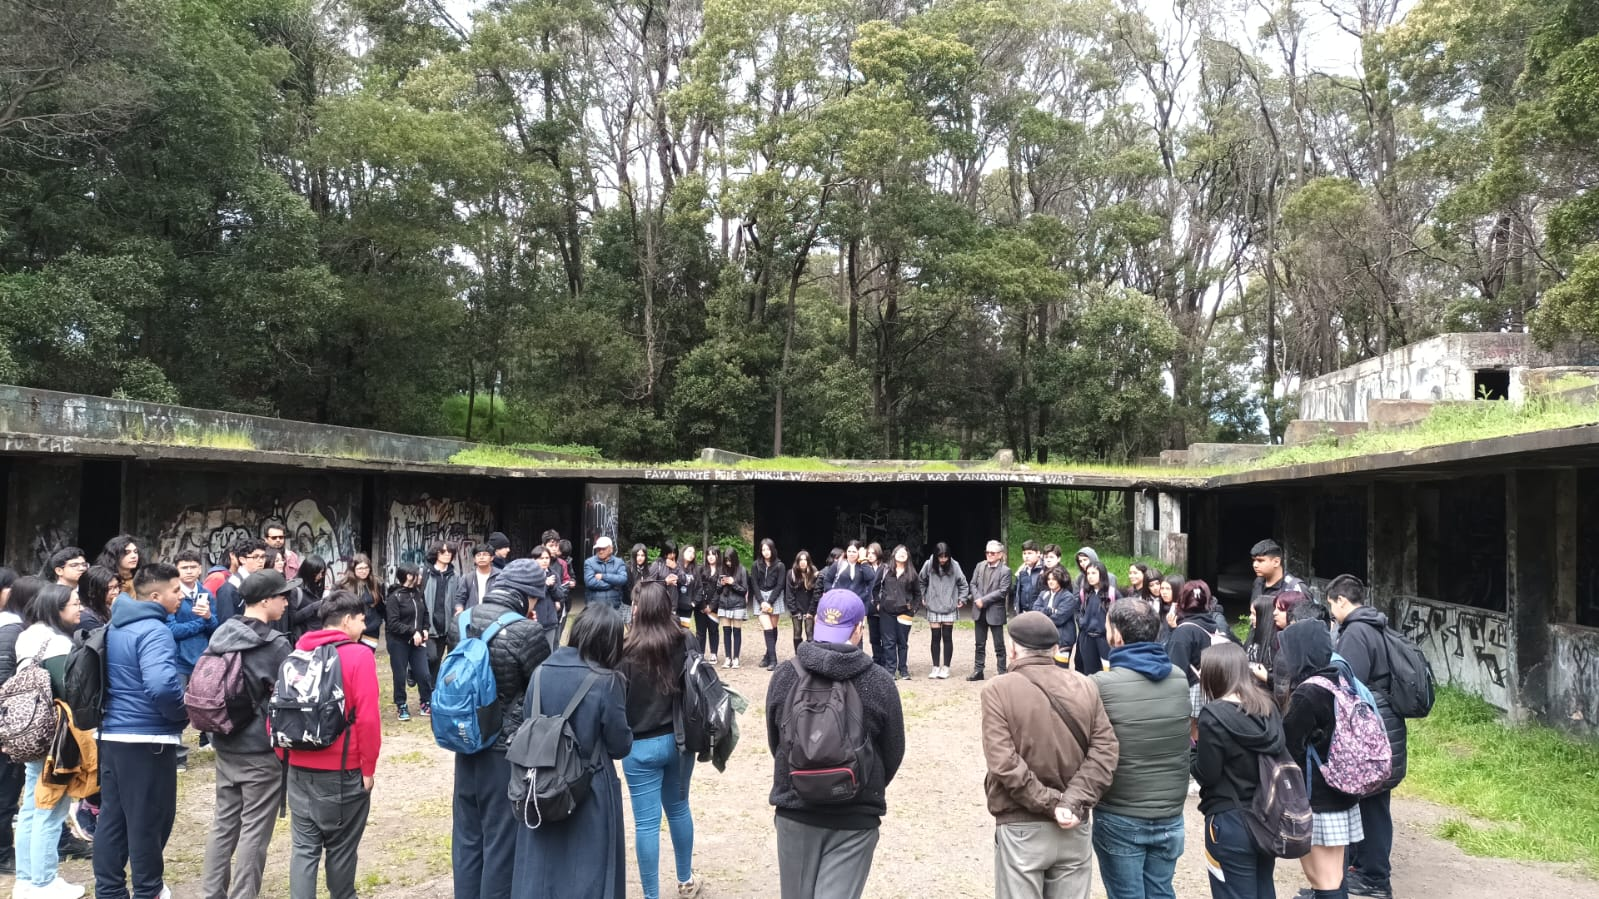 Mutual Bautista Van Schouwen anuncia  recuperación legal del Sitio de Memoria El Morro de Talcahuano: Espacio de la historia social, política y represiva del Bio Bío